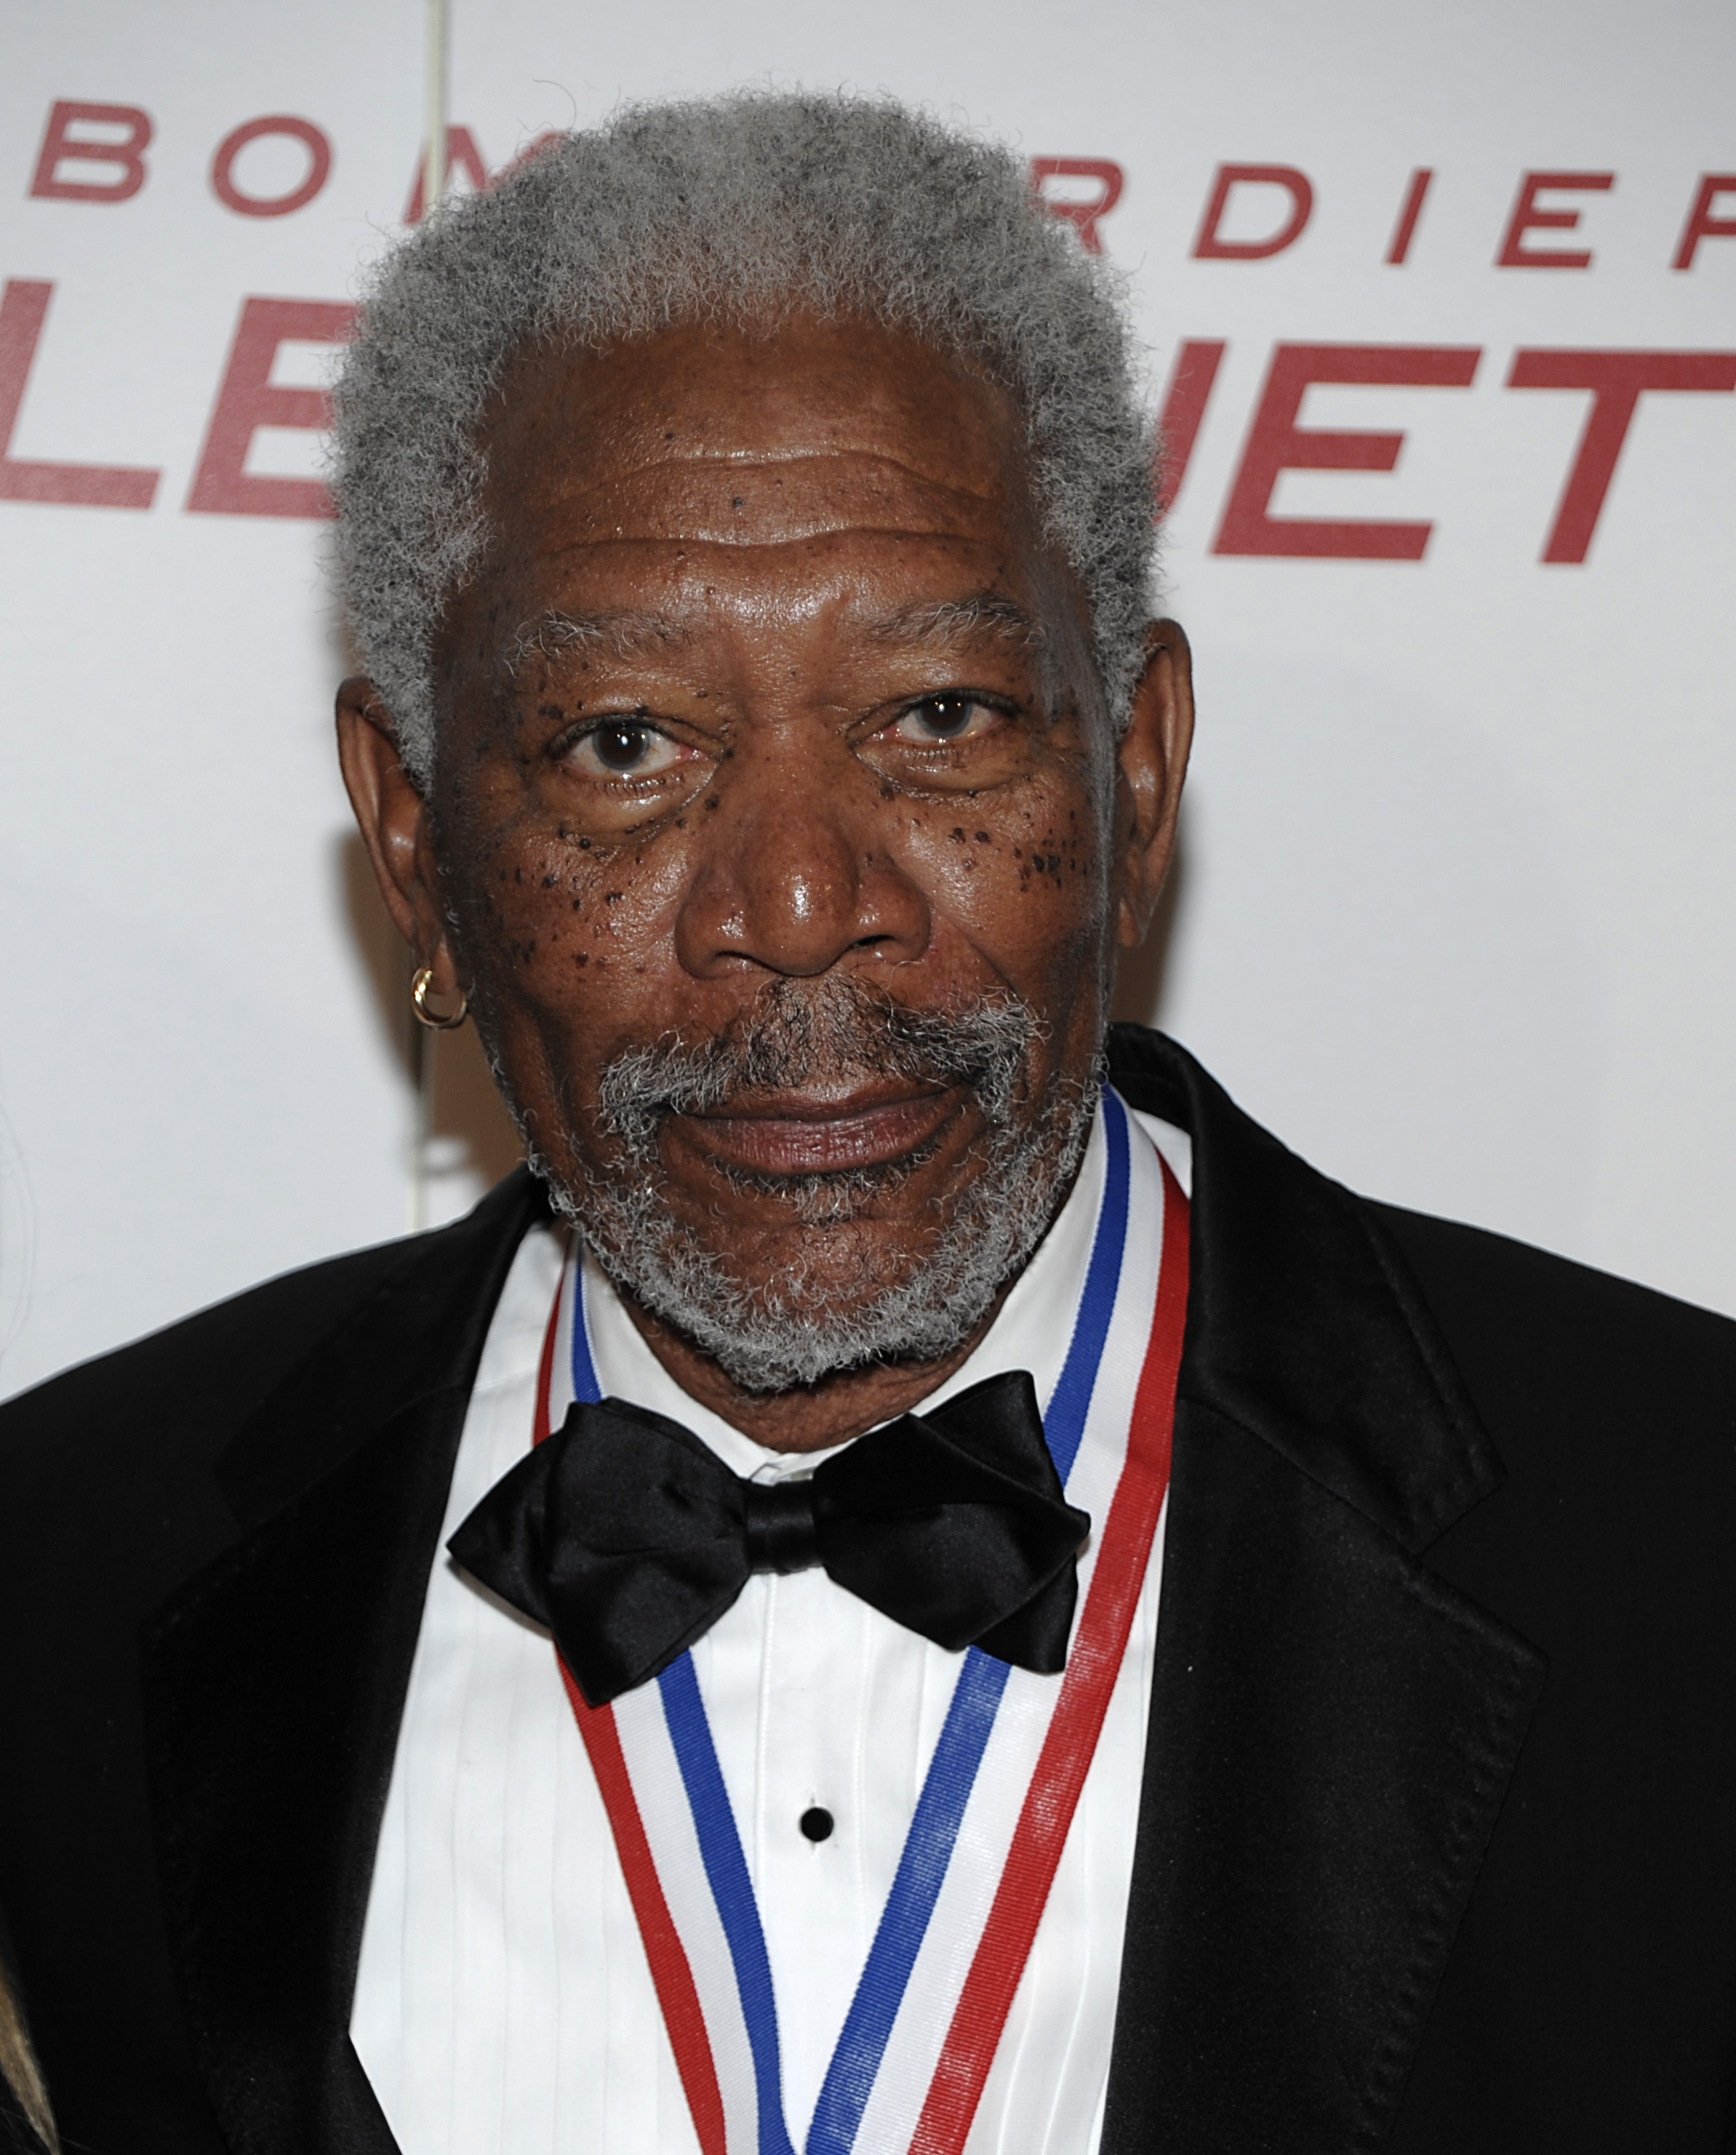 Morgan Freeman trasslade in sig i ett rejält drama 2009 då hans styvbarnbarn menade att hon hade ett förhållande med Freeman, och hade haft det sedan hon var tonåring. Det ska även vara skälet till att Freemans före detta fru ville skiljas efter 24 år. "H